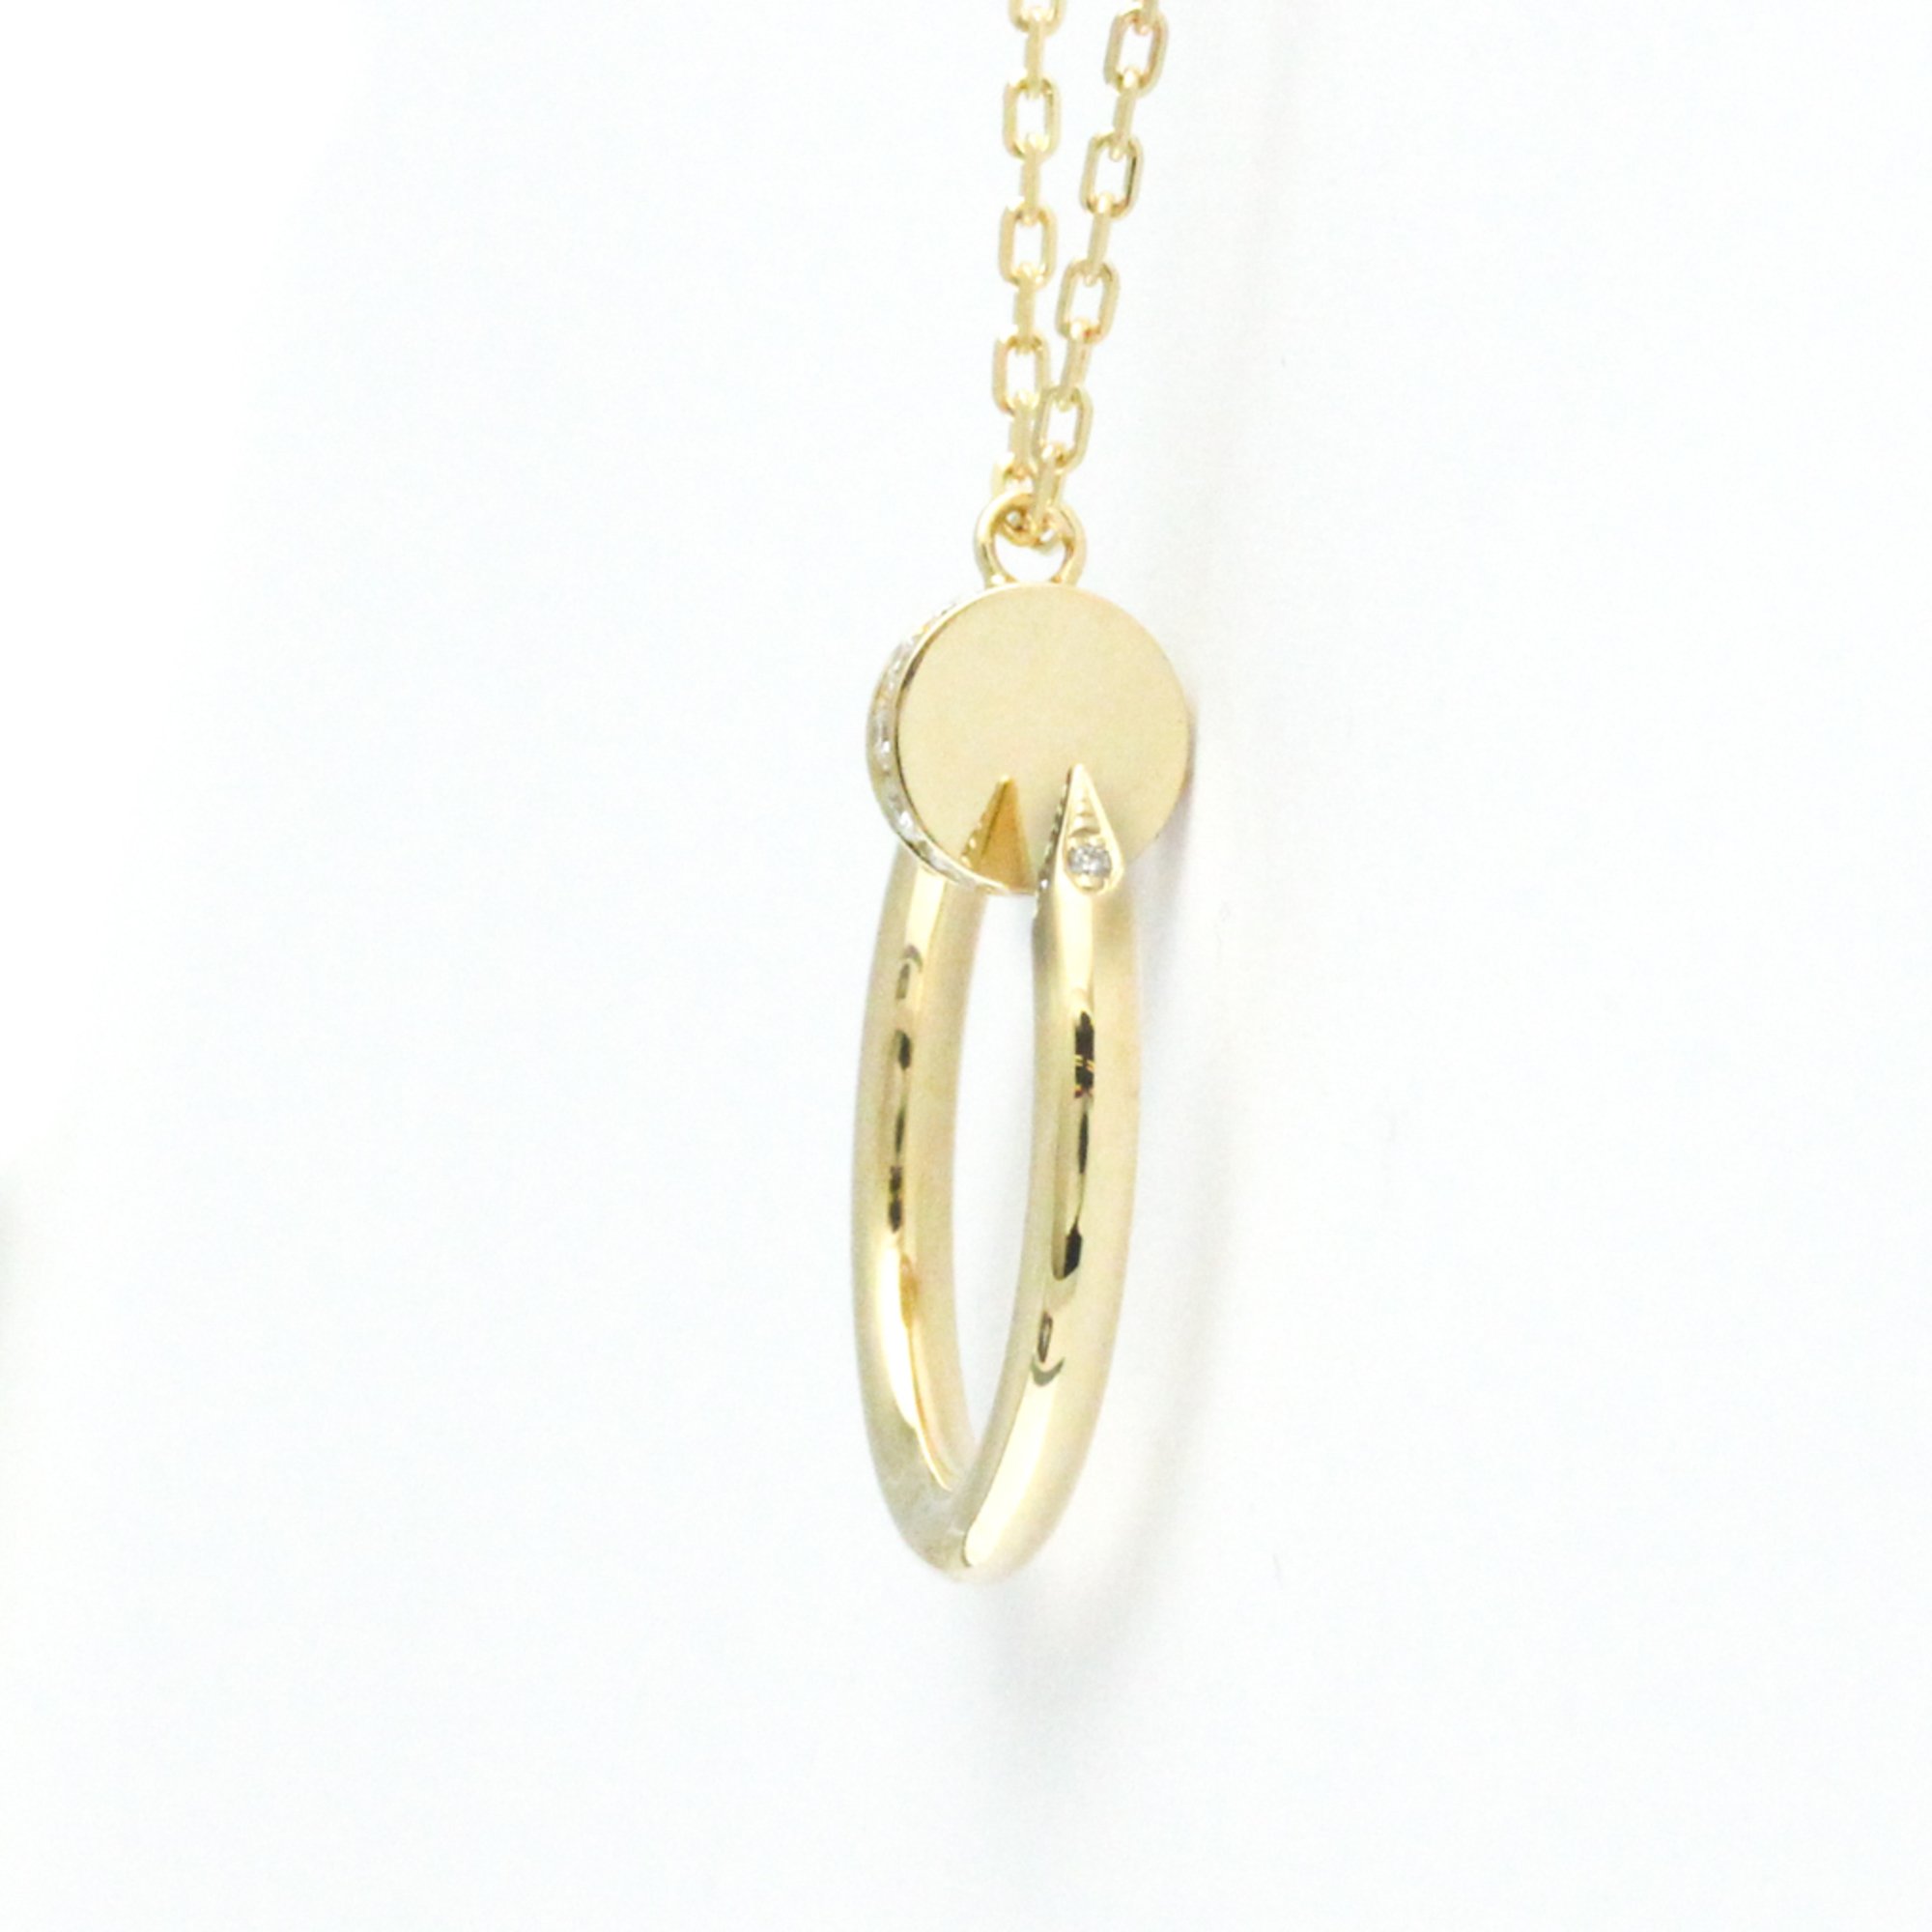 Cartier Juste Un Clou Necklace B7224889 Yellow Gold (18K) Diamond Men,Women Fashion Pendant Necklace Carat/0.12 (Gold)